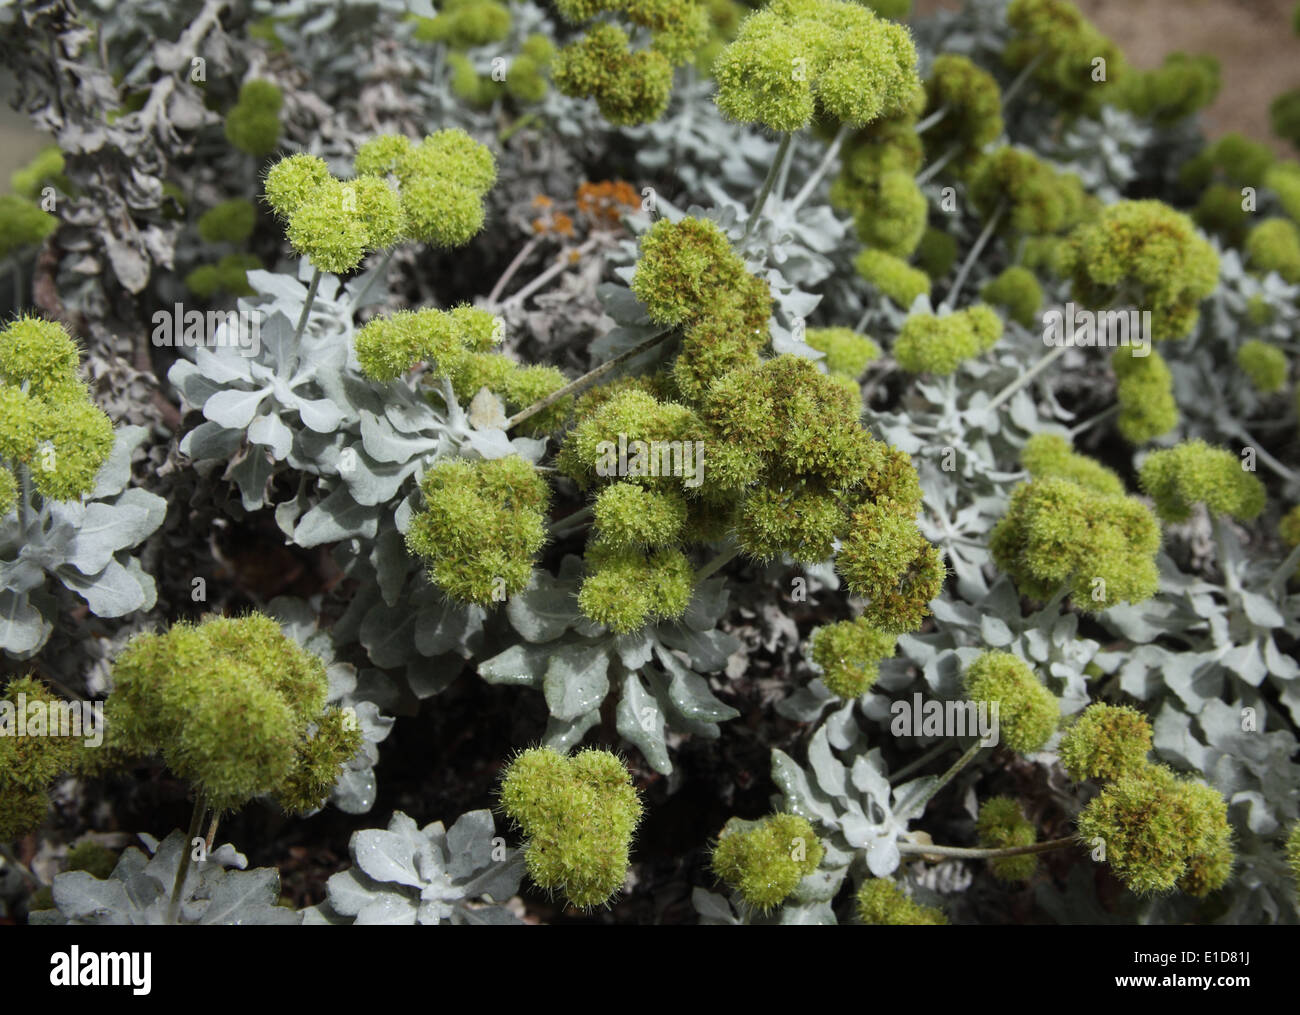 Eriogonum crocatum plant in flower Stock Photo